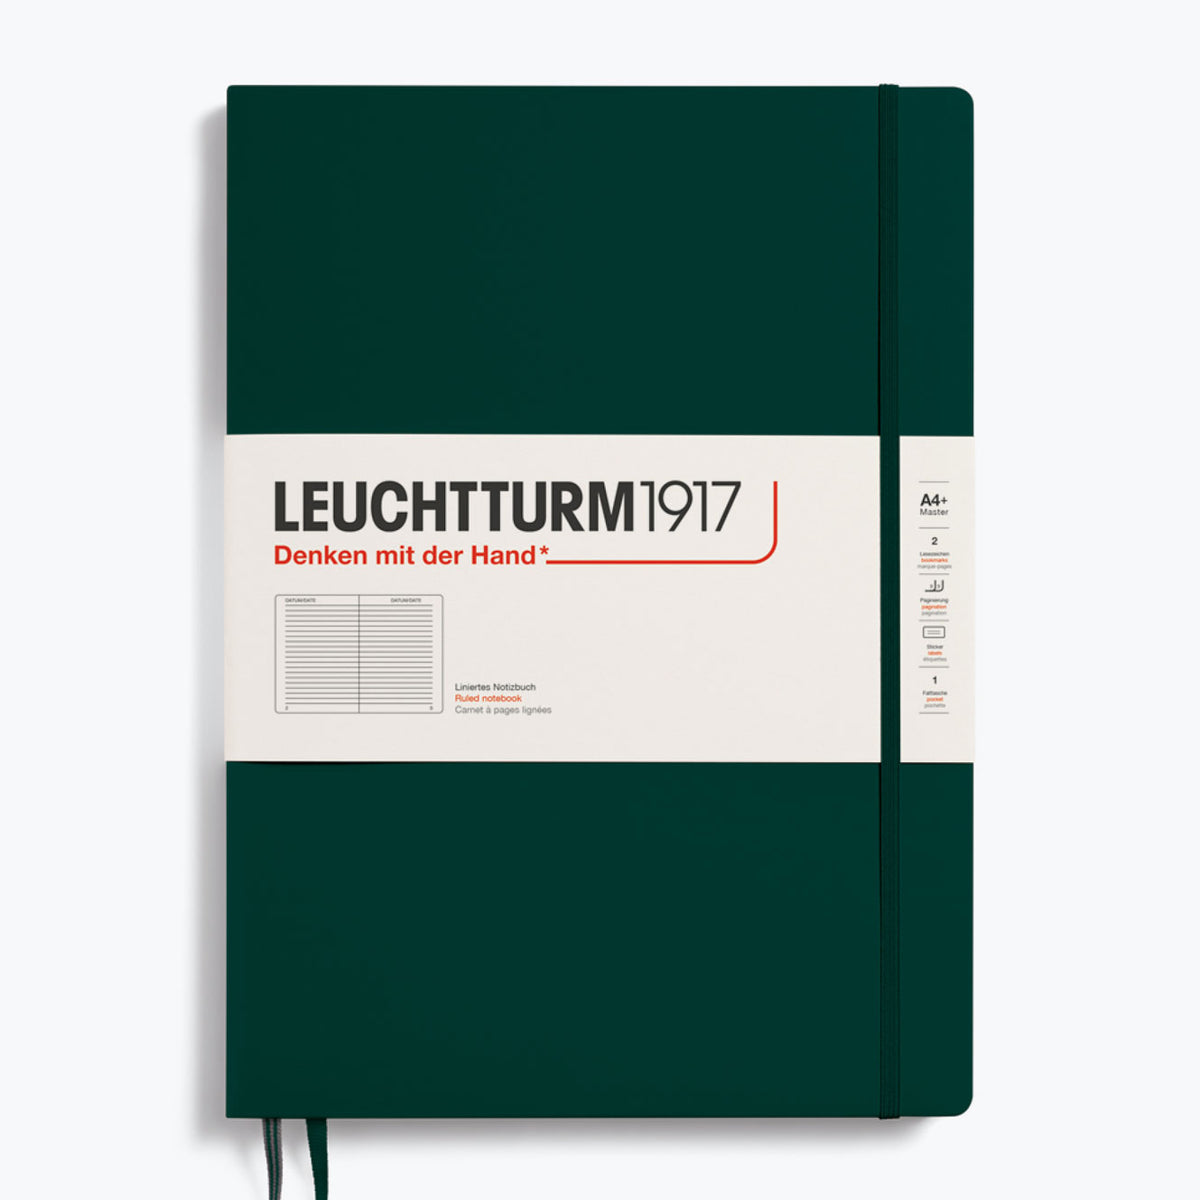 Leuchtturm1917 - Notebook - A4+ - Slim - Forest Green